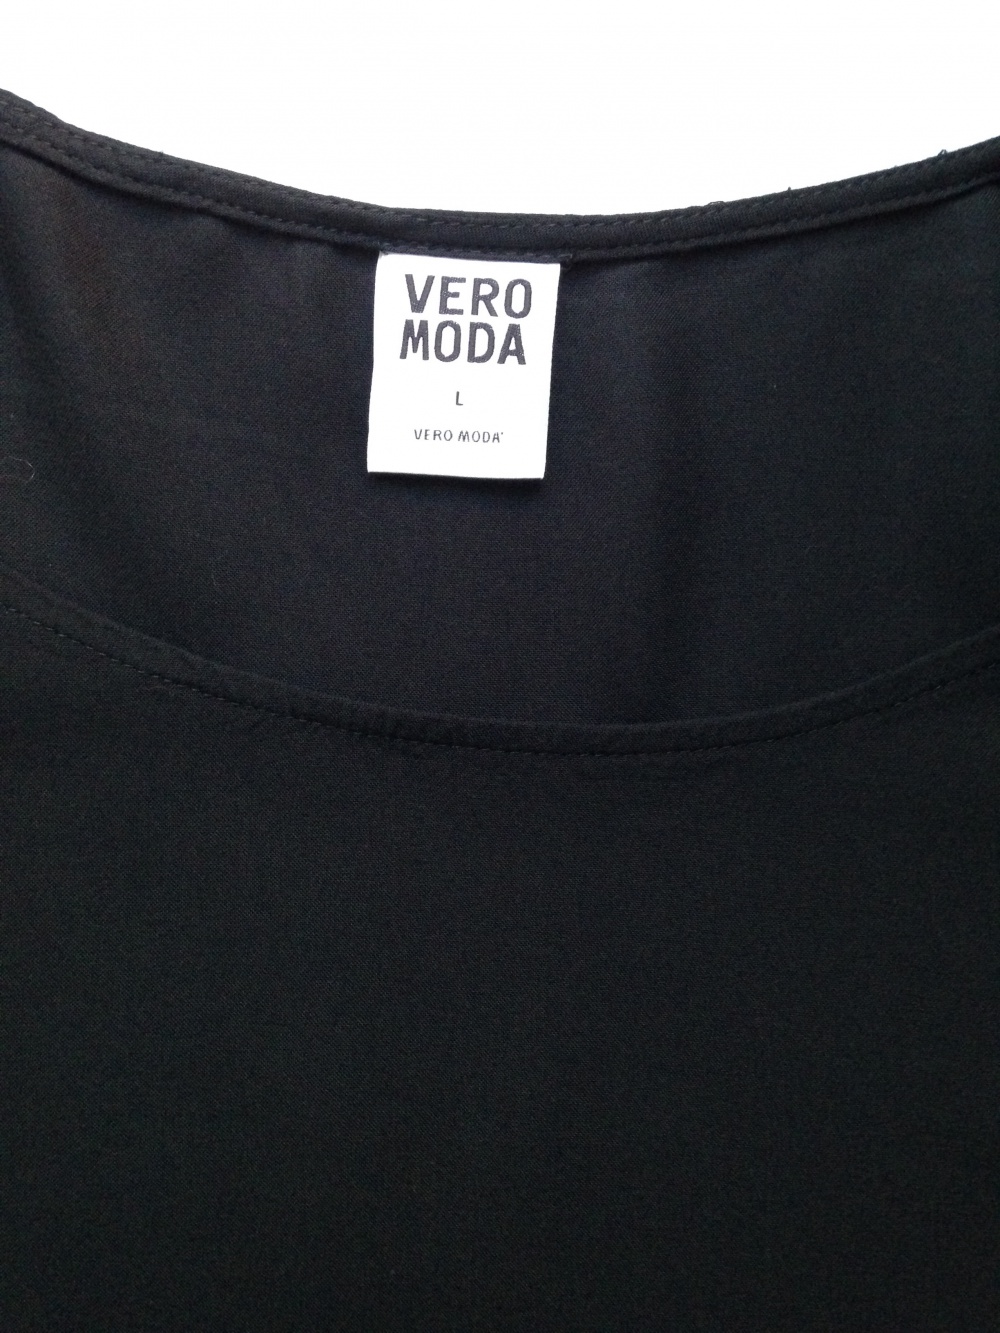 Платье " VERO MODA ", размер L, Дания.